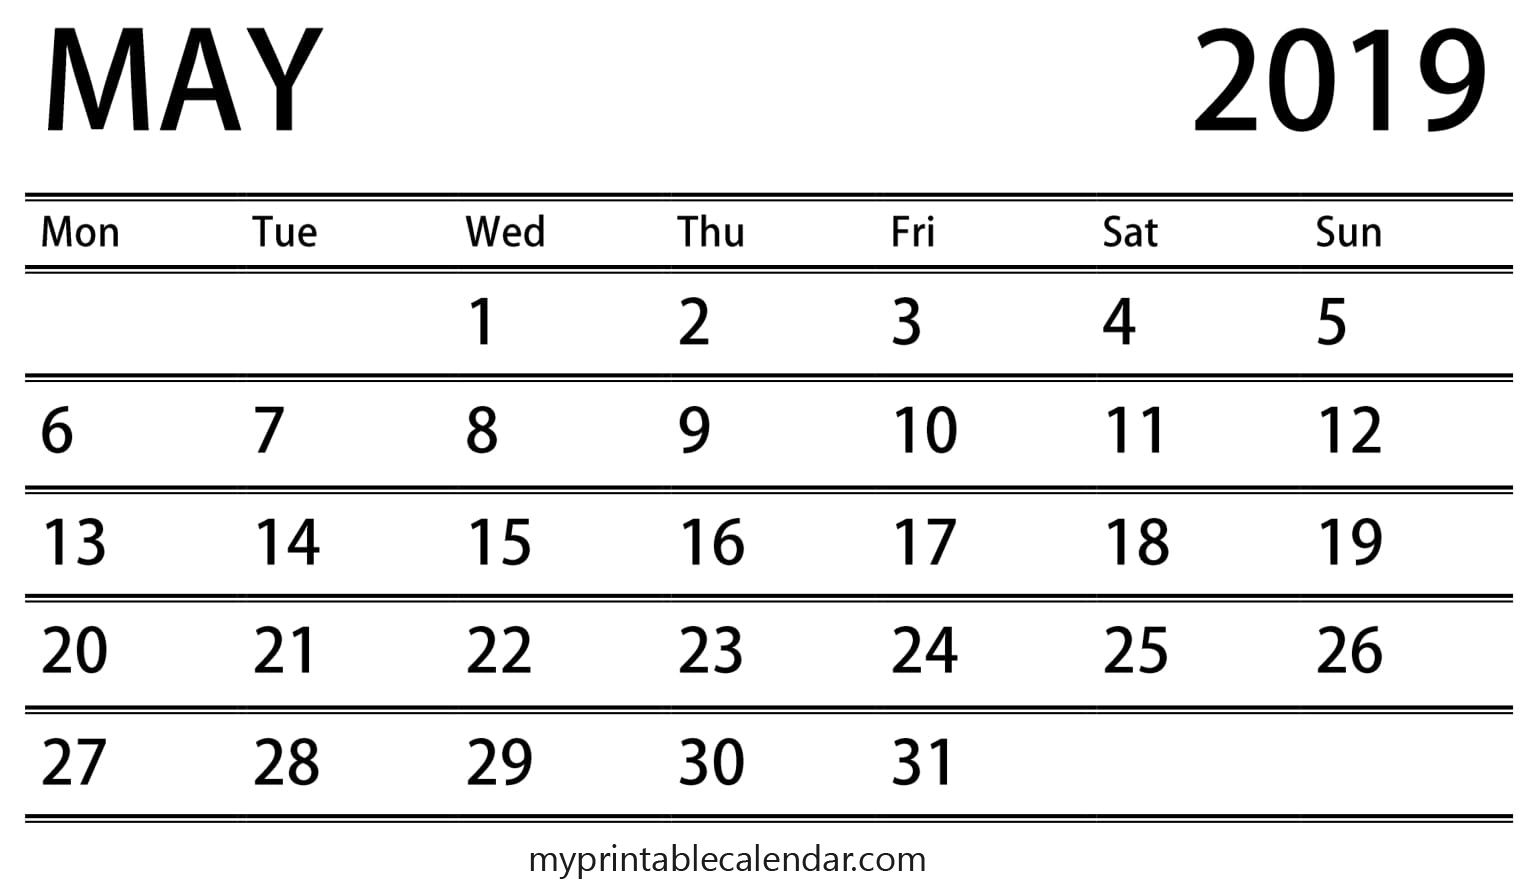 Events Calendar For May 2019 | Event Calendar, Calendar 2019